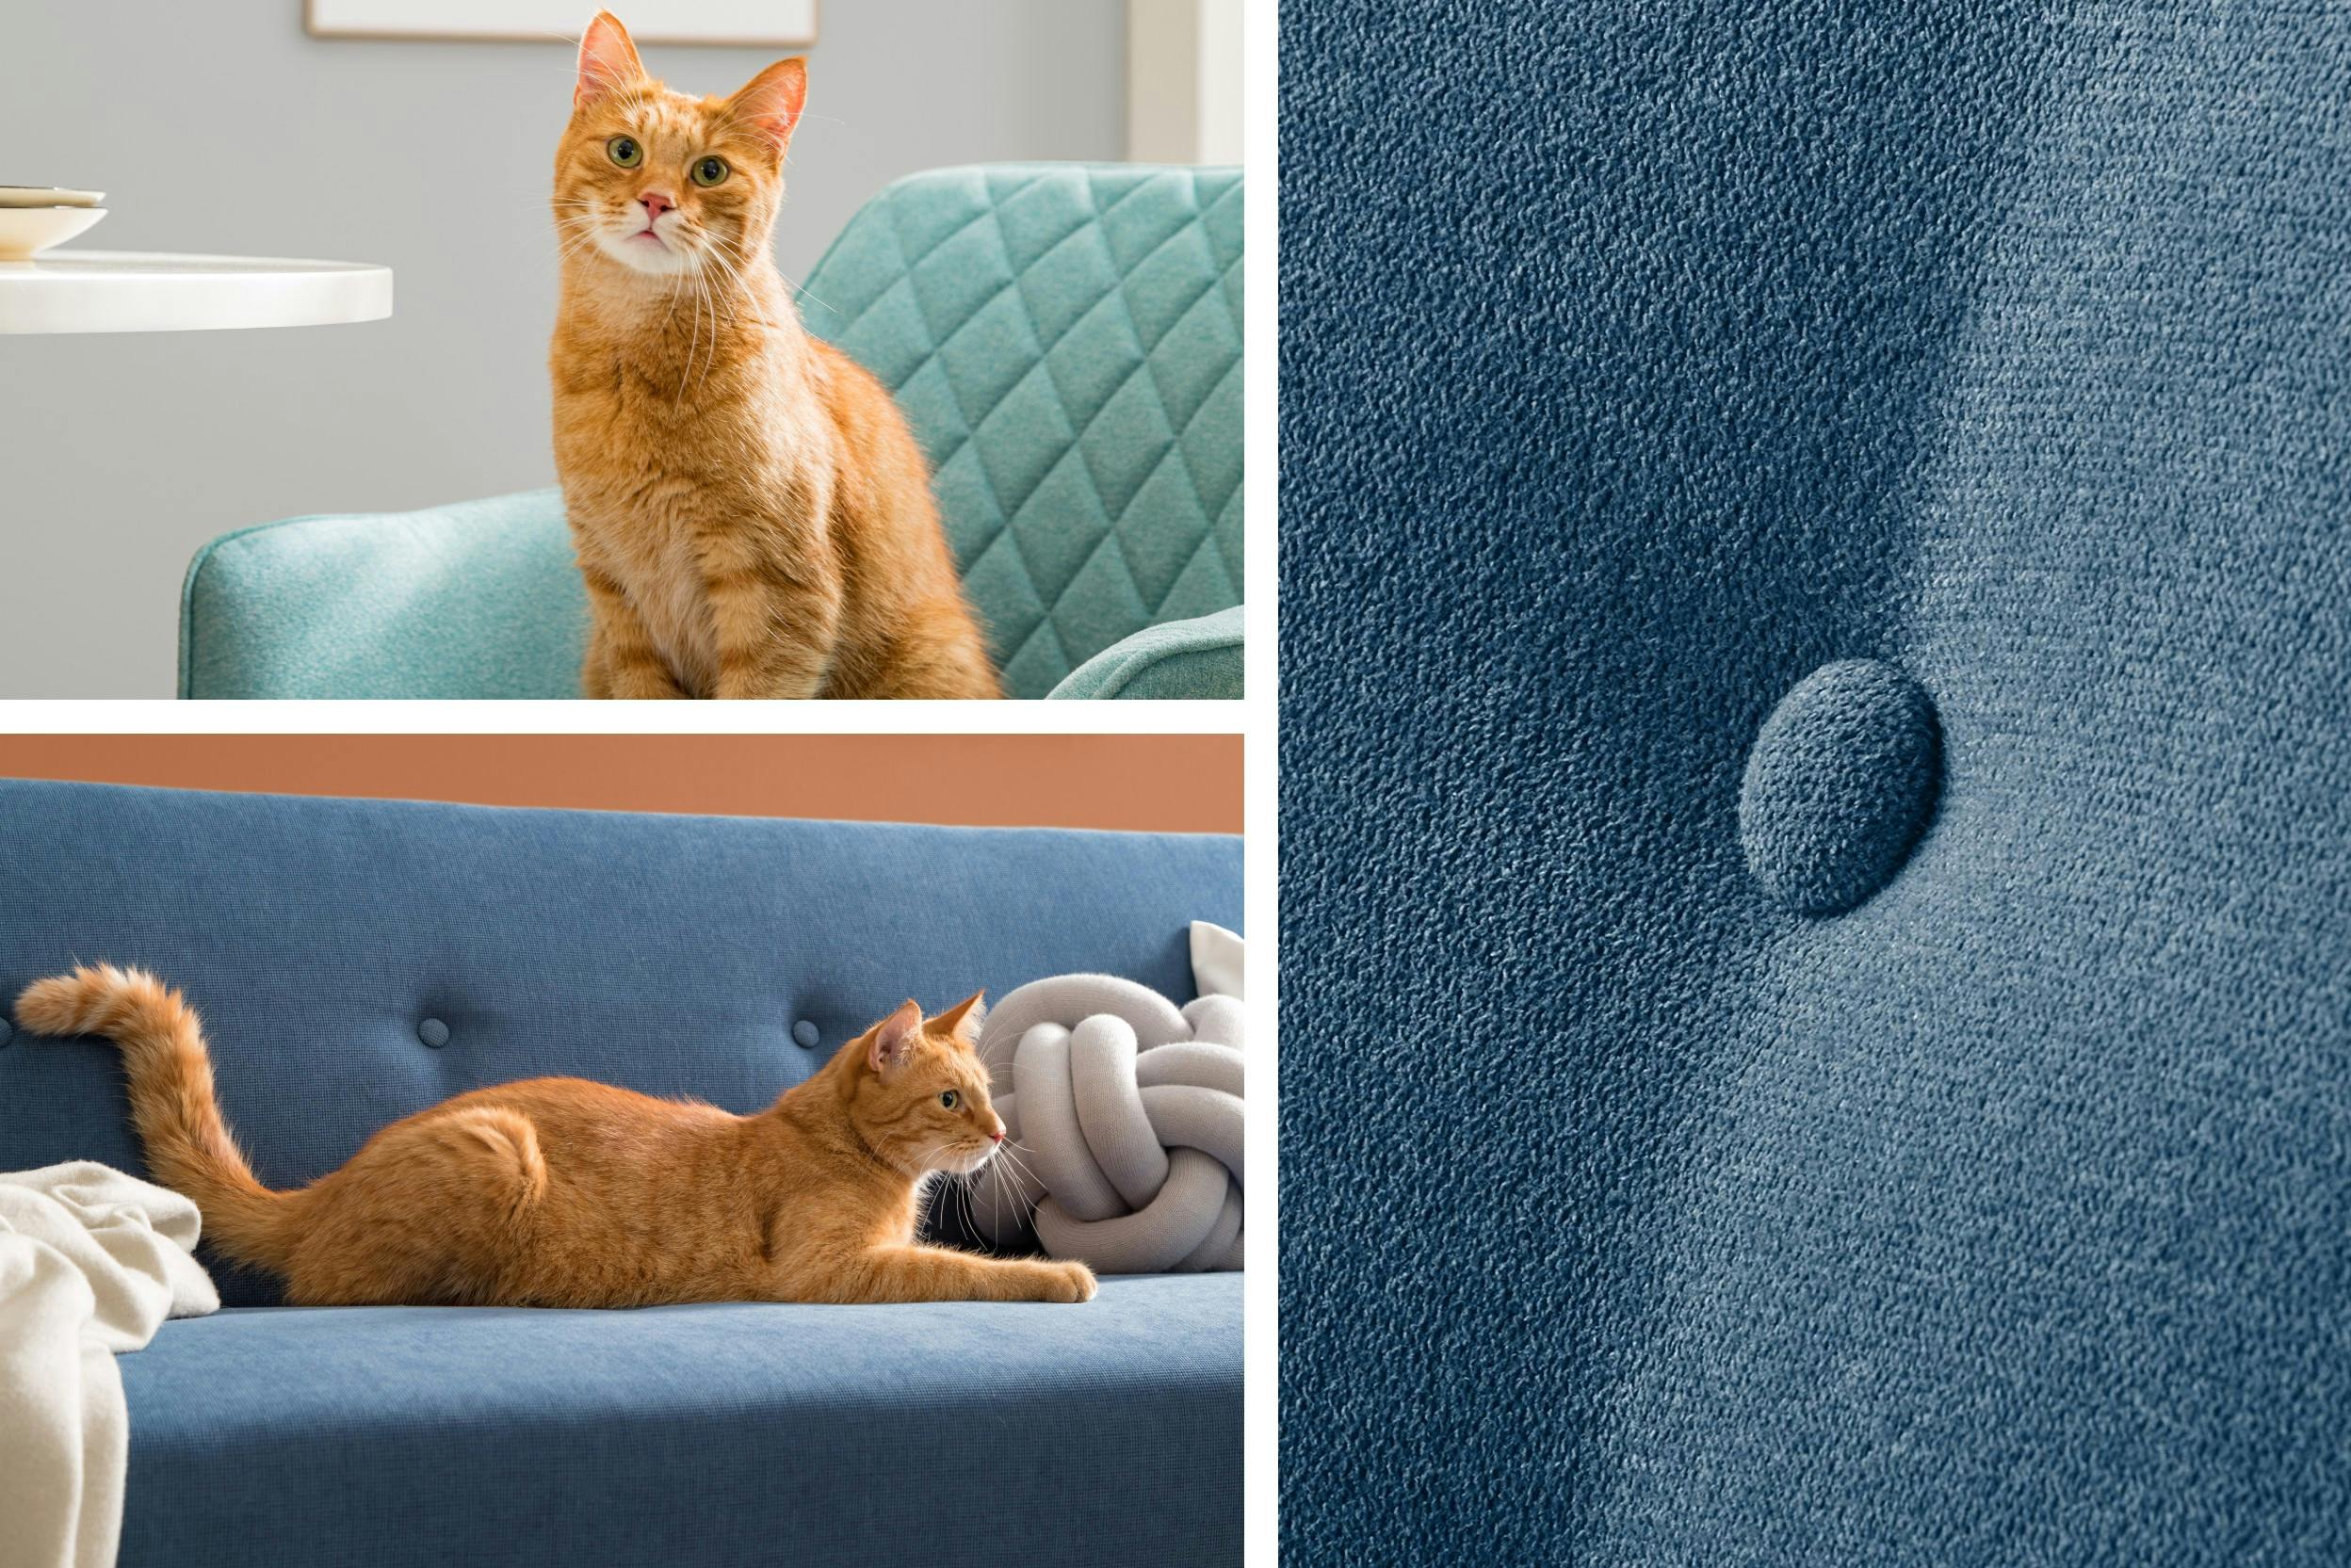 Getigerte Katze auf Polstermöbel (türkiser Armlehnensessel und blaue Couch) sitzend